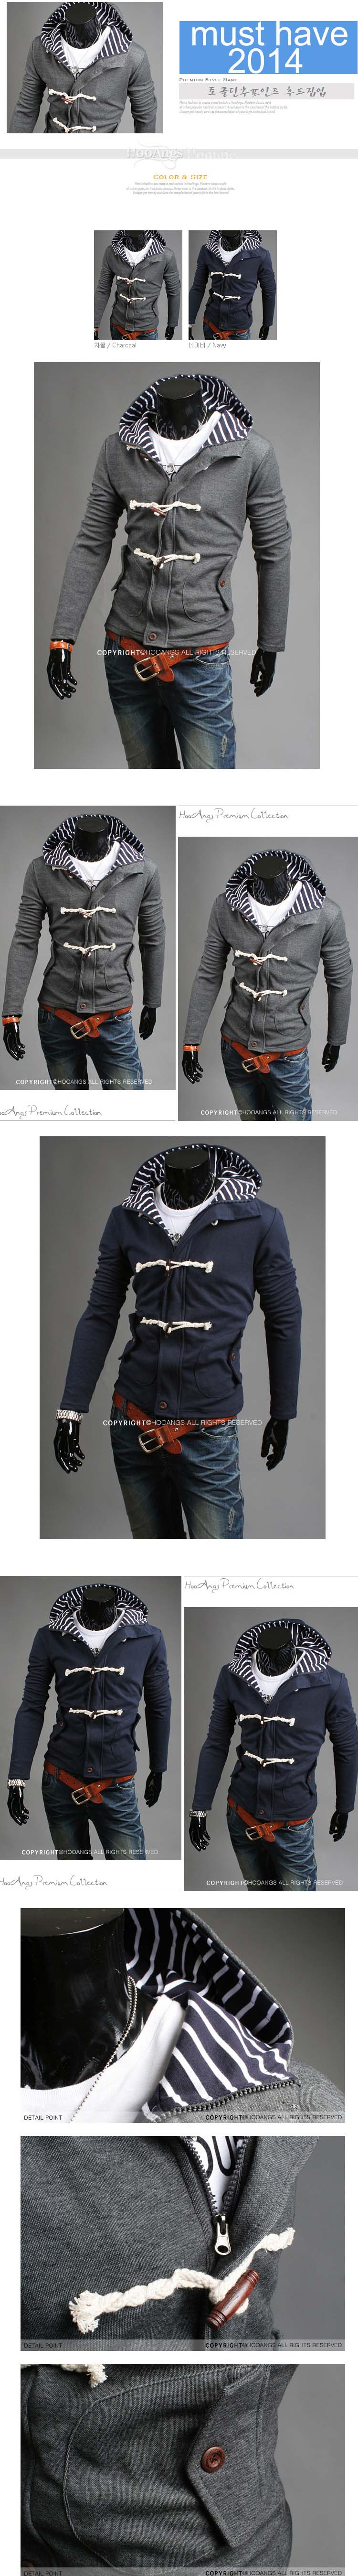 jual jaket pria korea import dengan gaya khas korea membuat jaket pria ini sangat banyak diminati